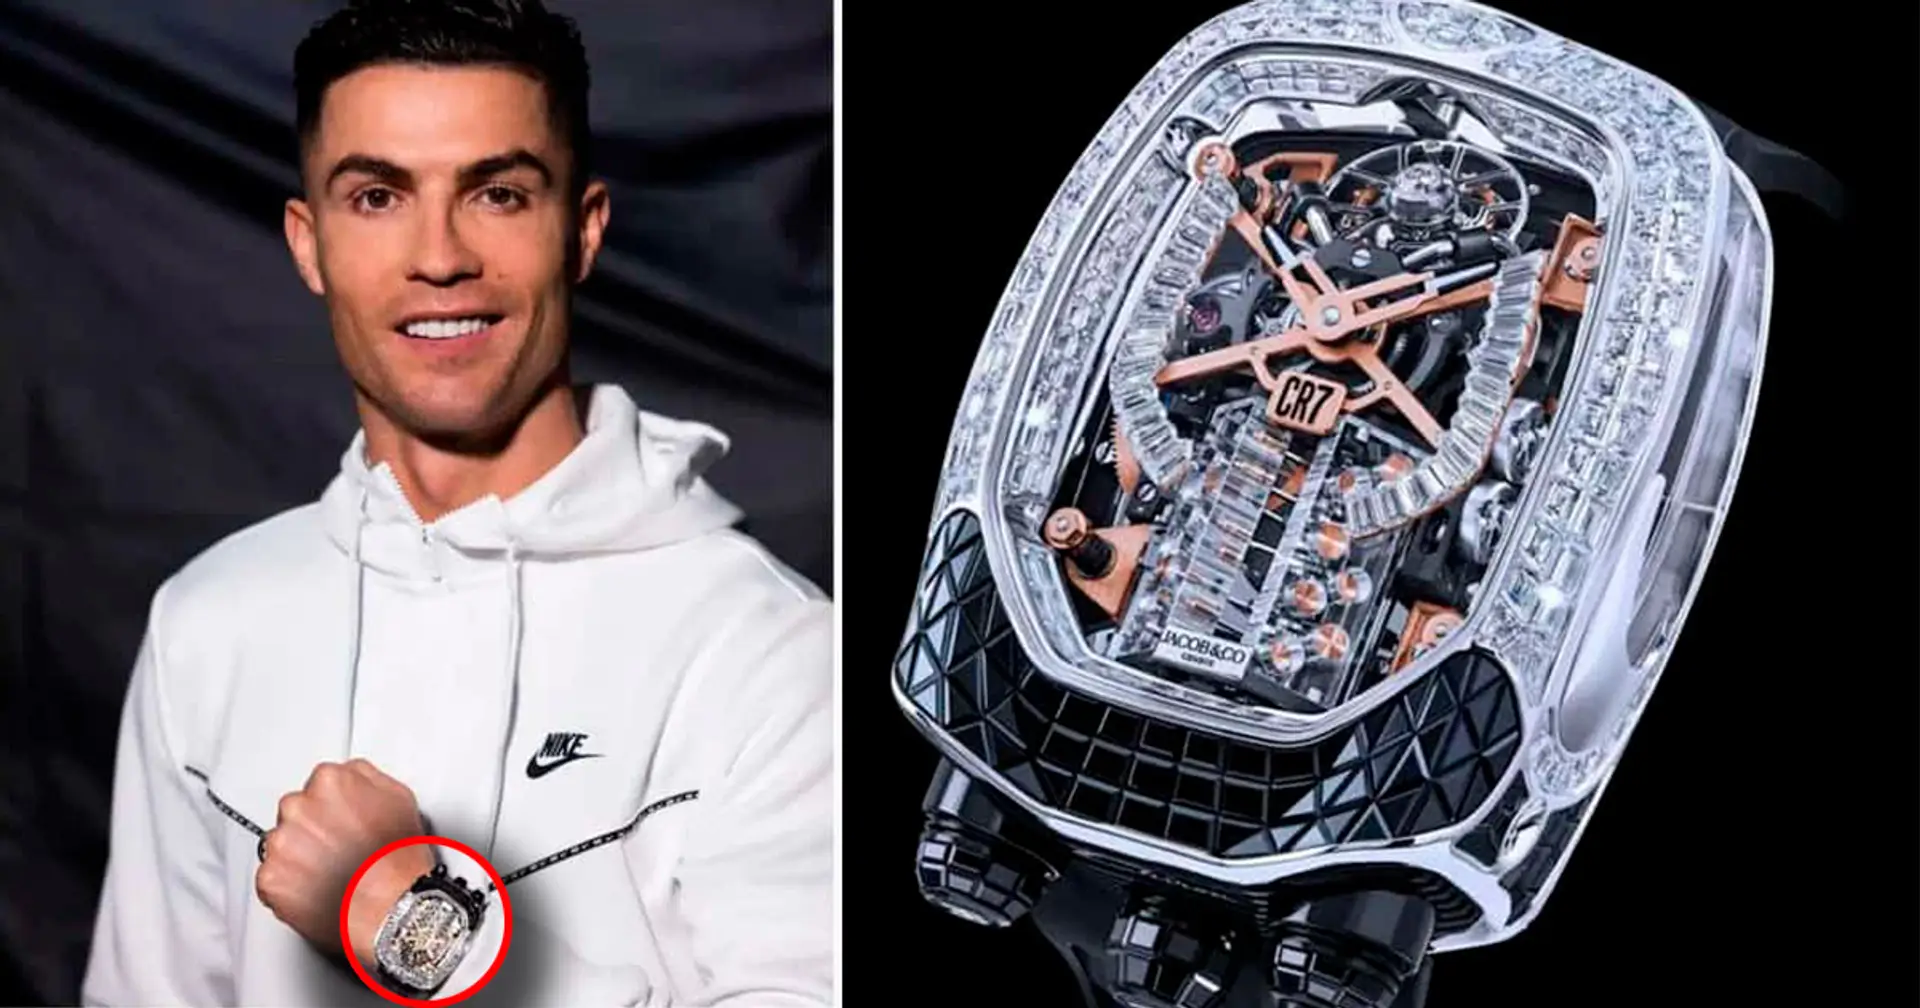 Cristiano Ronaldo kauft sich eine 1-Millionen-Dollar-Uhr, die zu seinem Bugatti Chiron passt